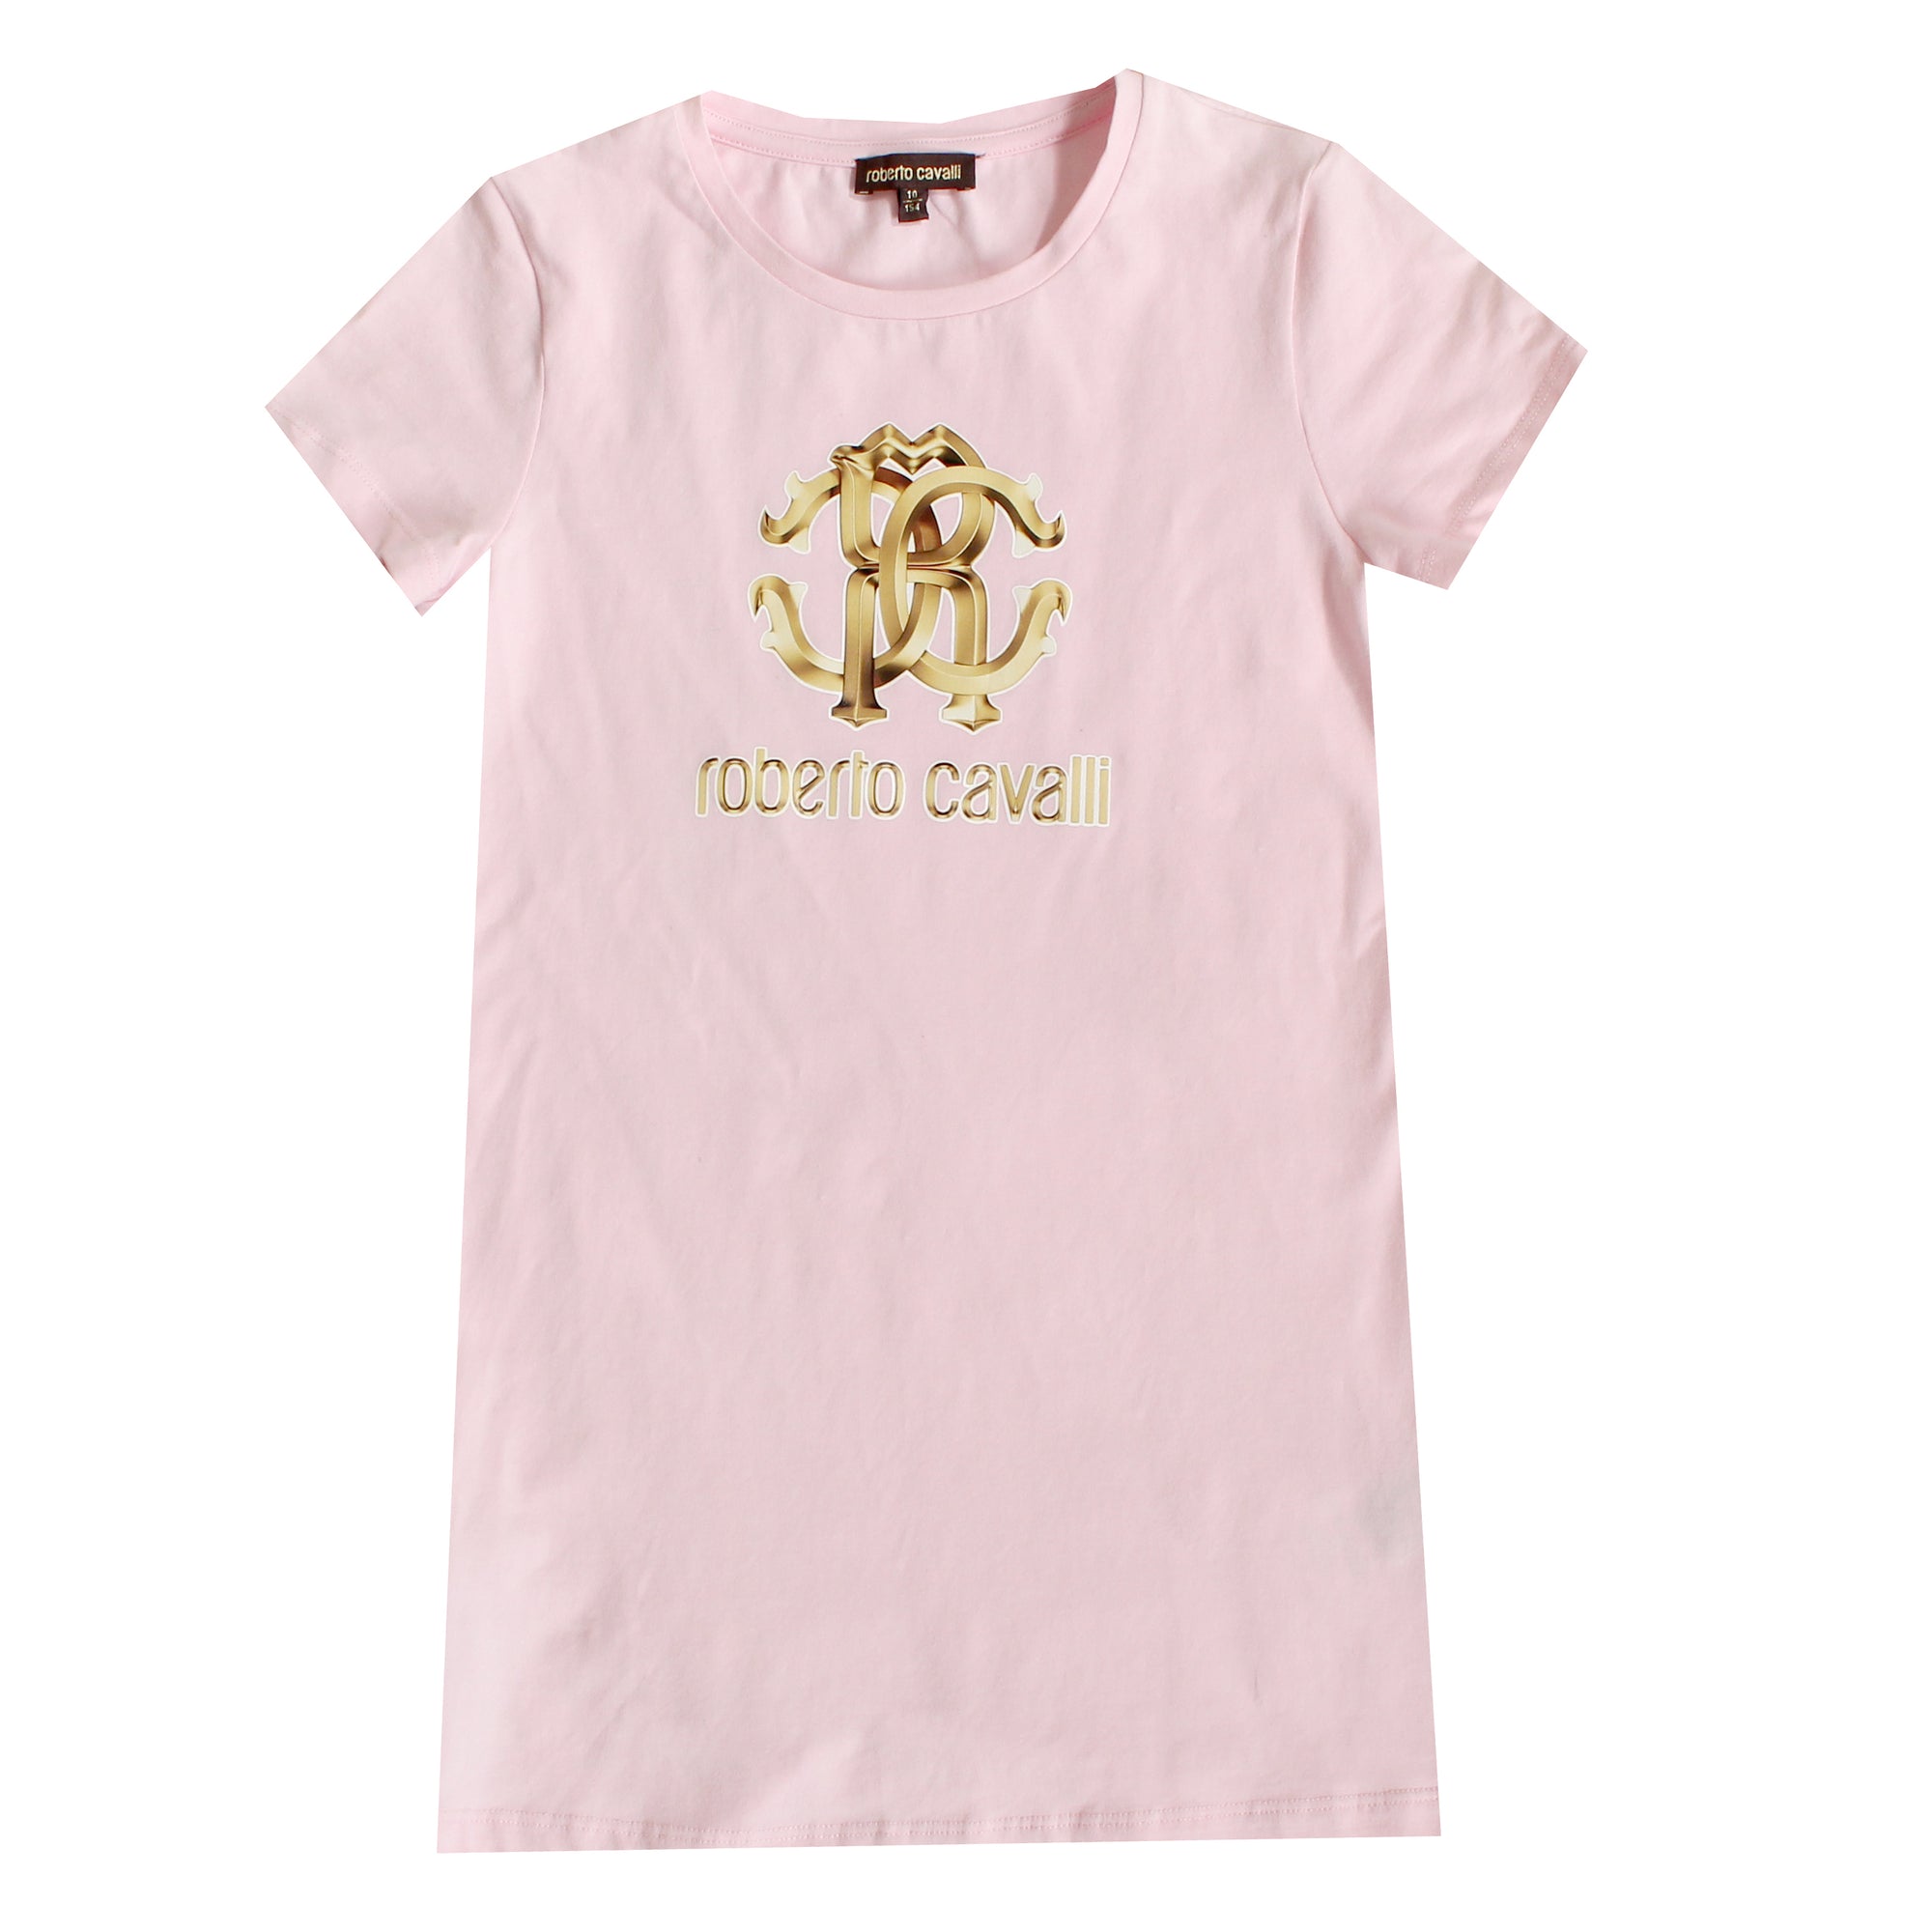 Girls Light Pink Logo Tee Shirt